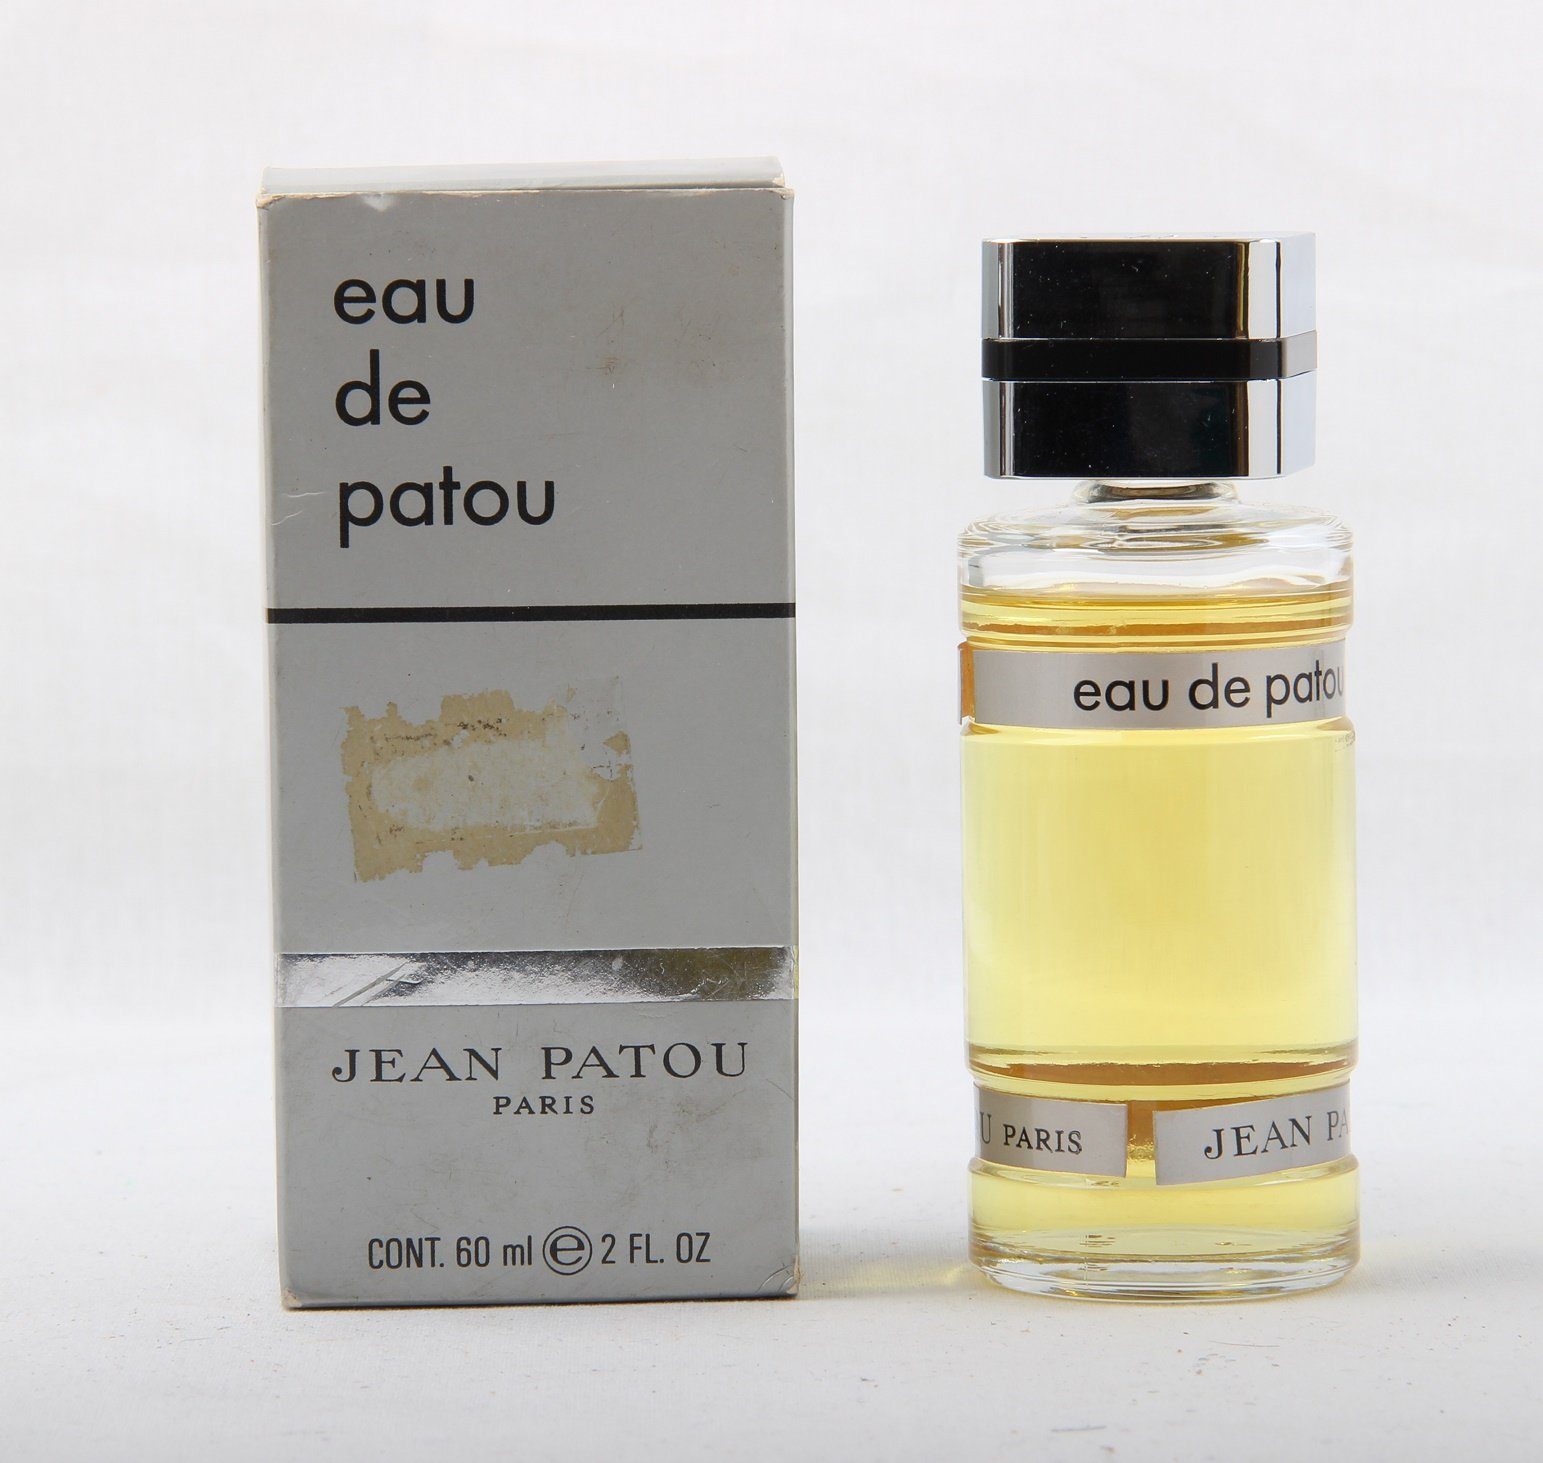 jean patou Eau de Toilette Jean Patou Eau de Patou 60 ml Der 1. Duft (Vintage)